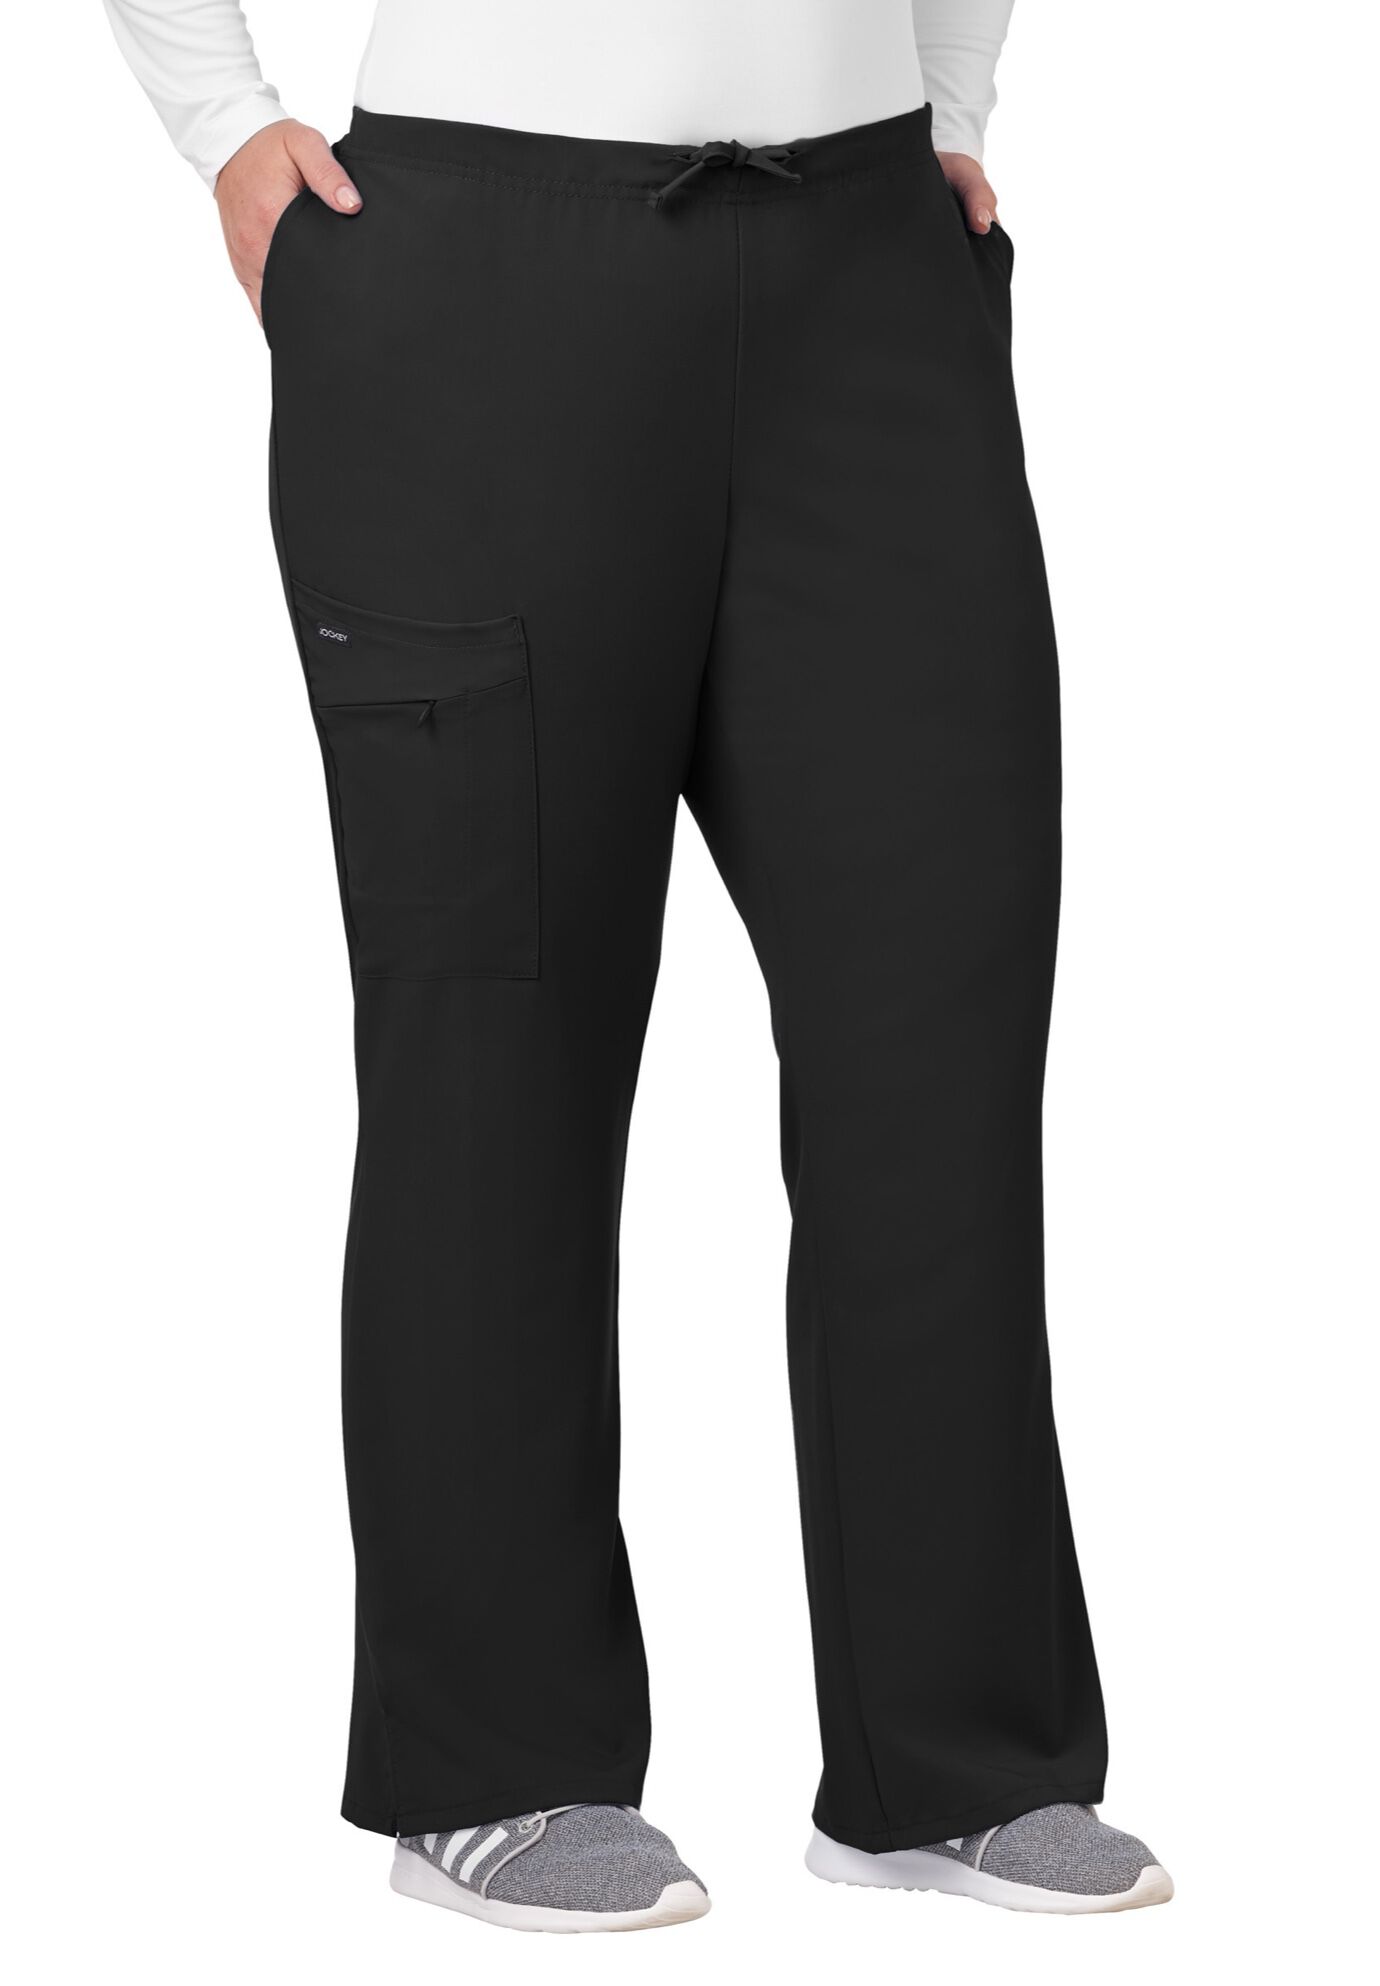 Plus Size Women's Jockey Scrubs Women's Favorite Fit Pant by Jockey Encompass Scrubs in Black (Size LT(14T-16T))